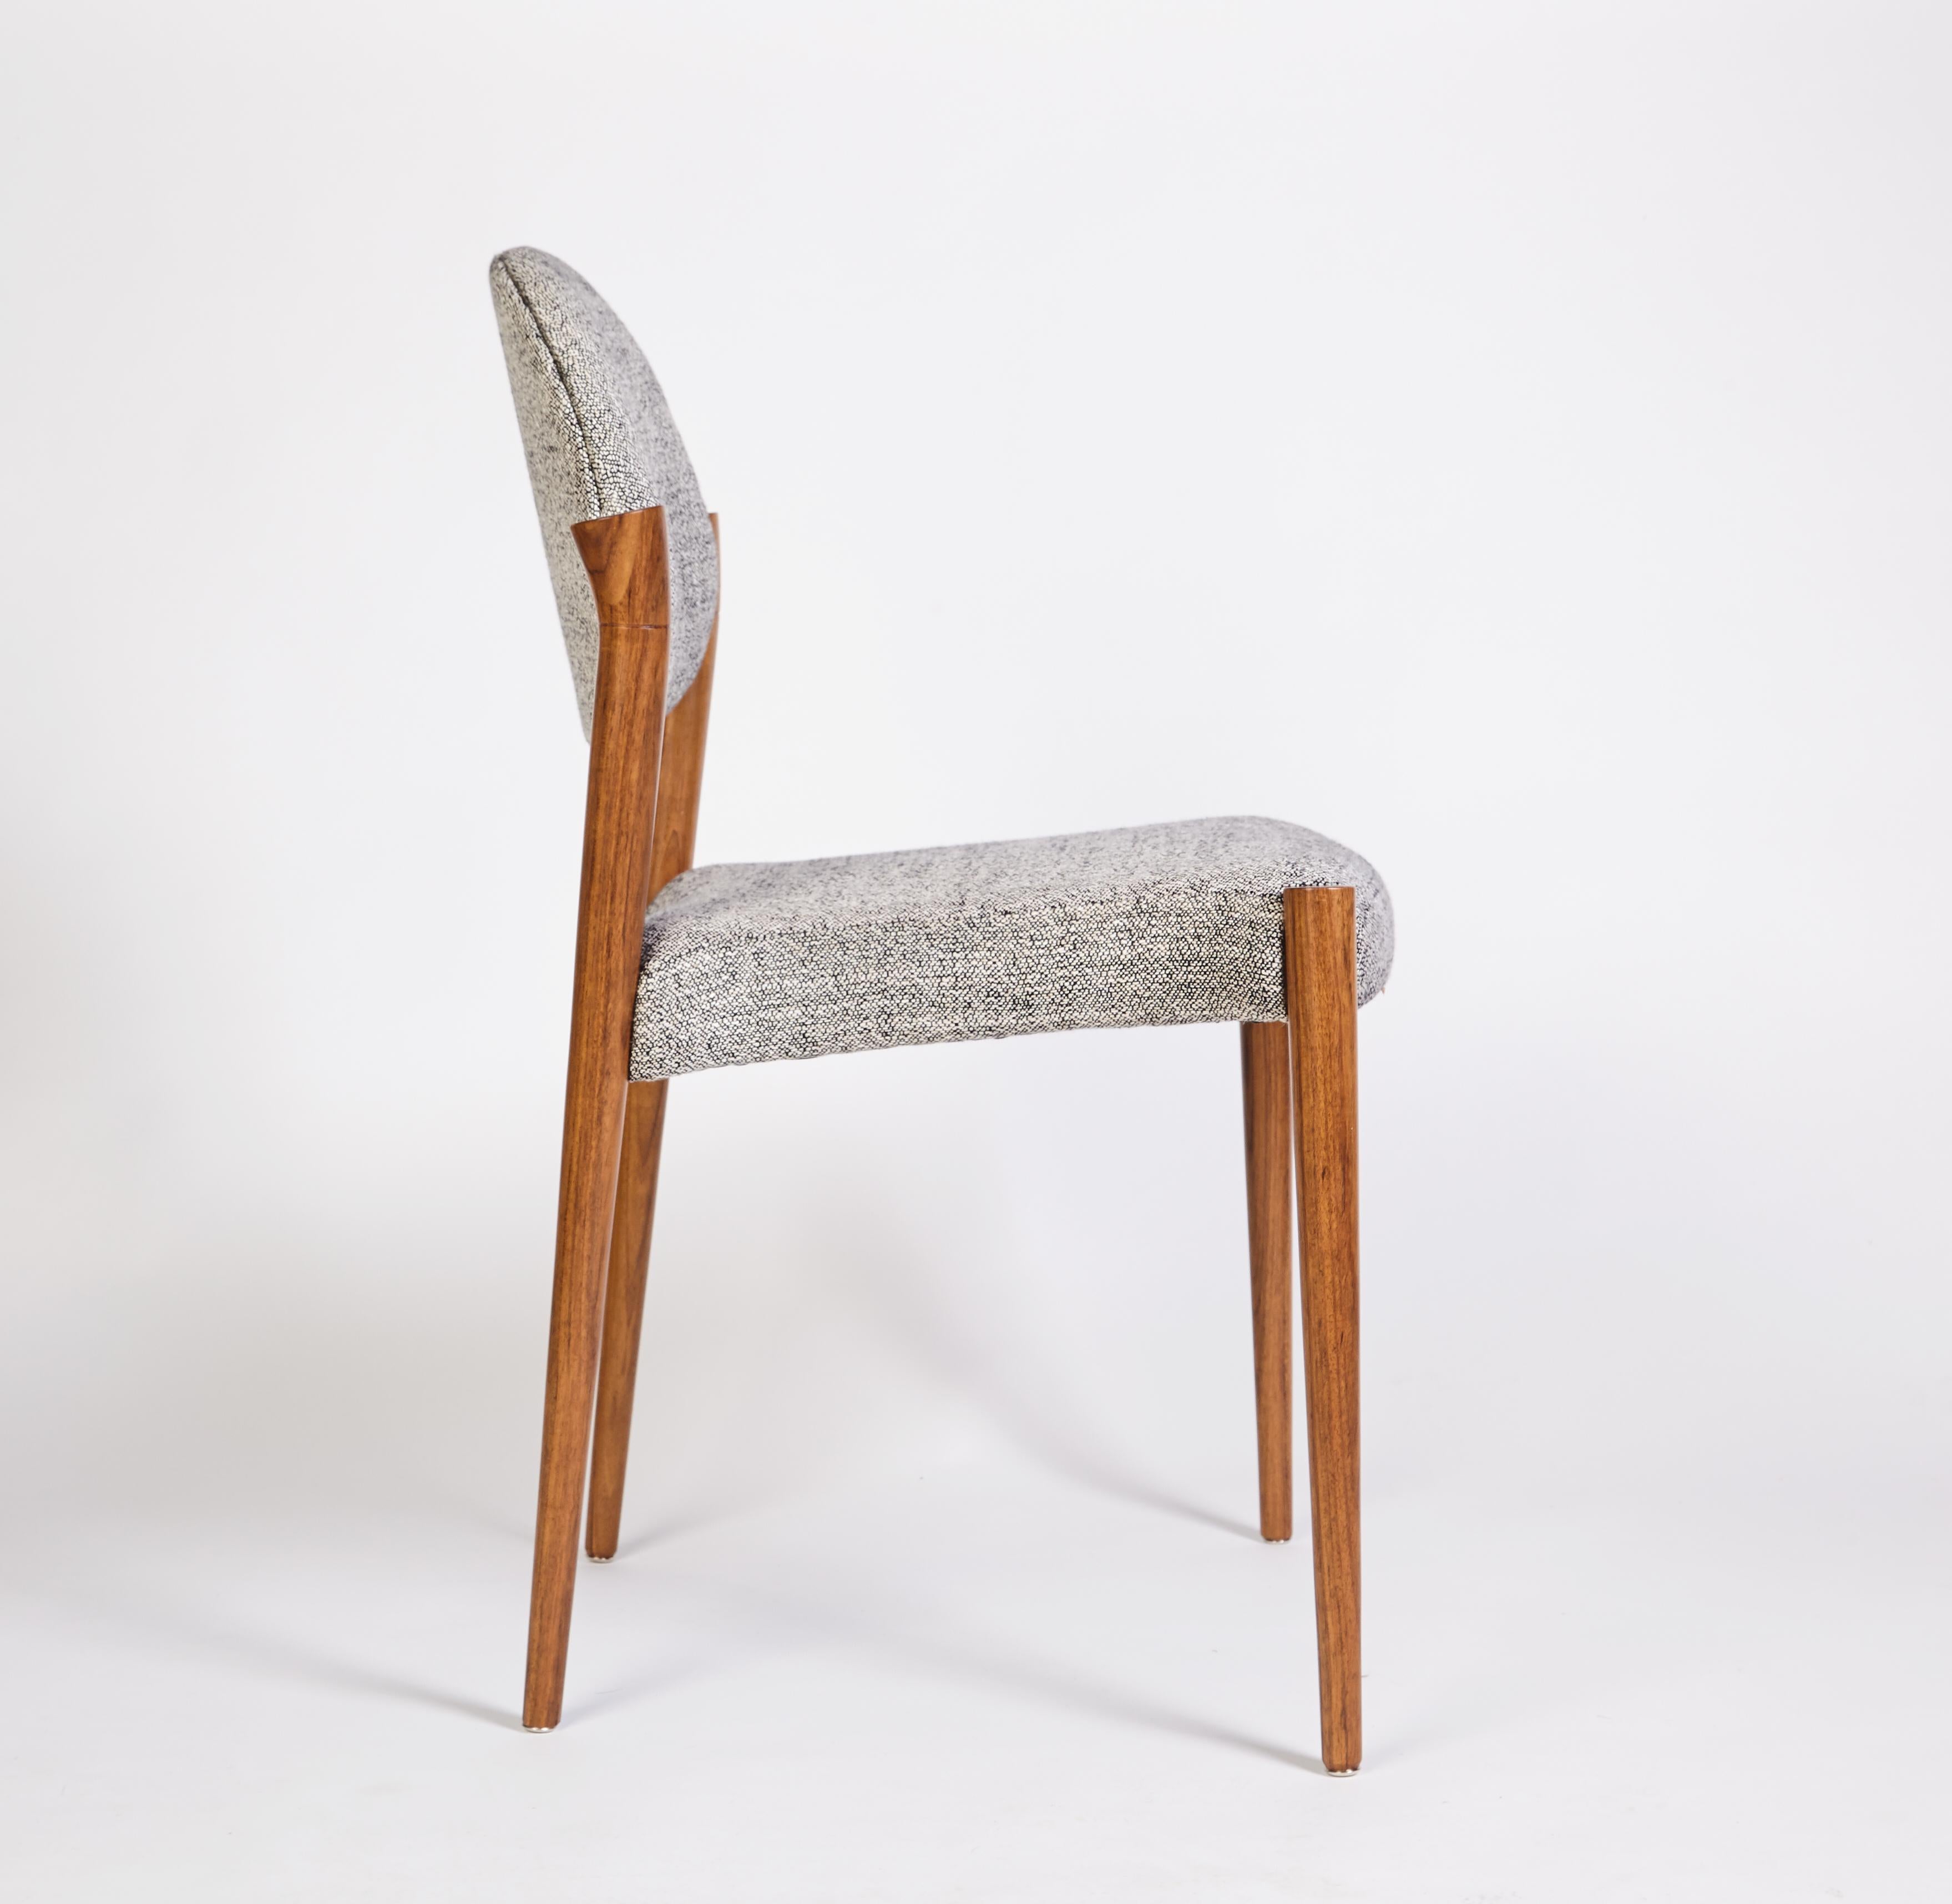 Tanoco Kleiner Stuhl Satz von 6 Stühlen, Mutenye Holz, Handgefertigt von Duistt

Die Stühle von Tanoco sind von der Architektur und dem Innendesign der Mitte des Jahrhunderts inspiriert. Mit seinen langen Bögen vermittelt er gleichzeitig ein Gefühl